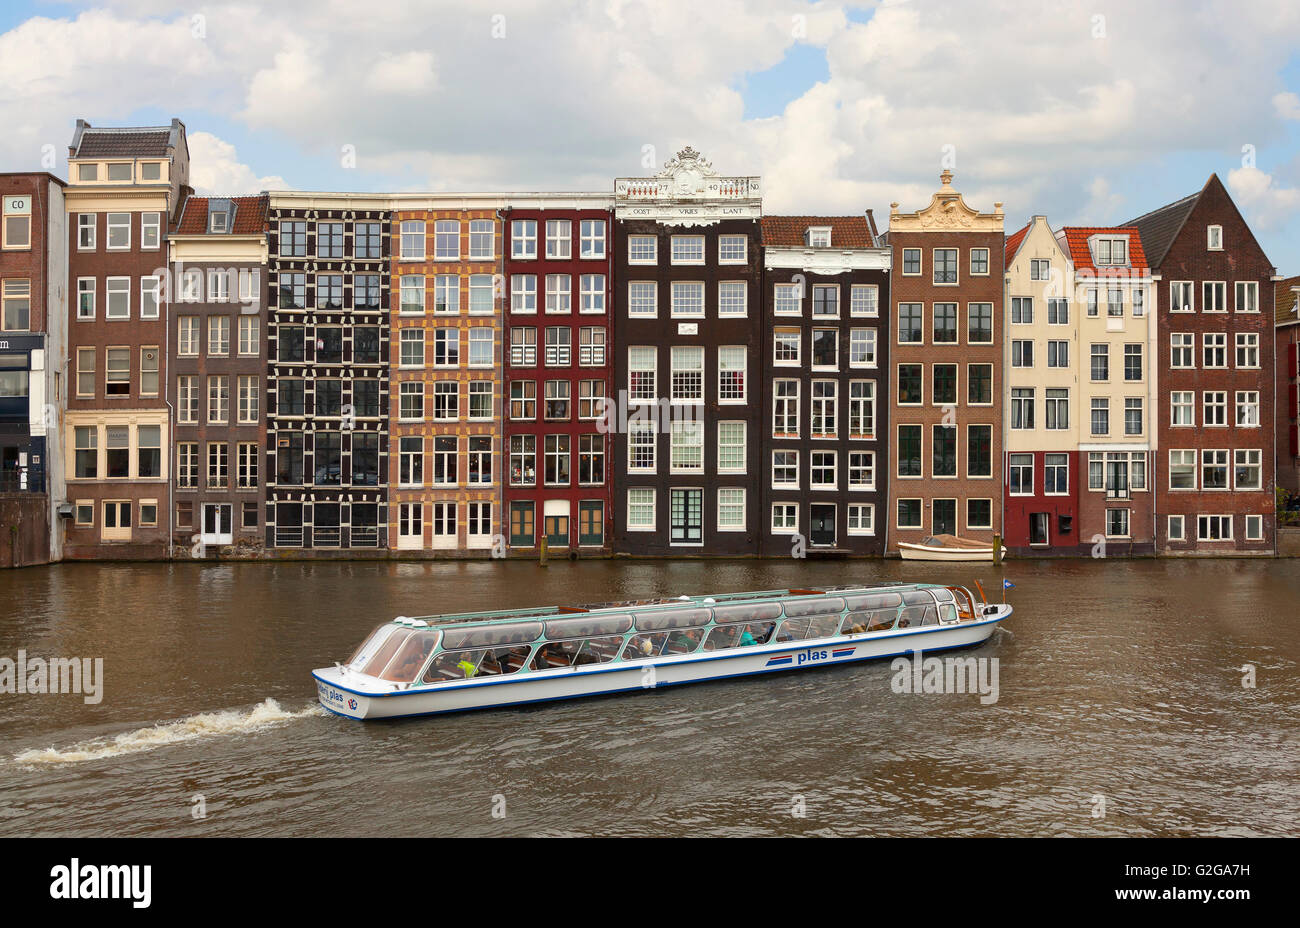 Arquitectura de Amsterdam, vista desde el Damrak, mirando al Este, el canal o el baile grachtenhuizen Foto de stock